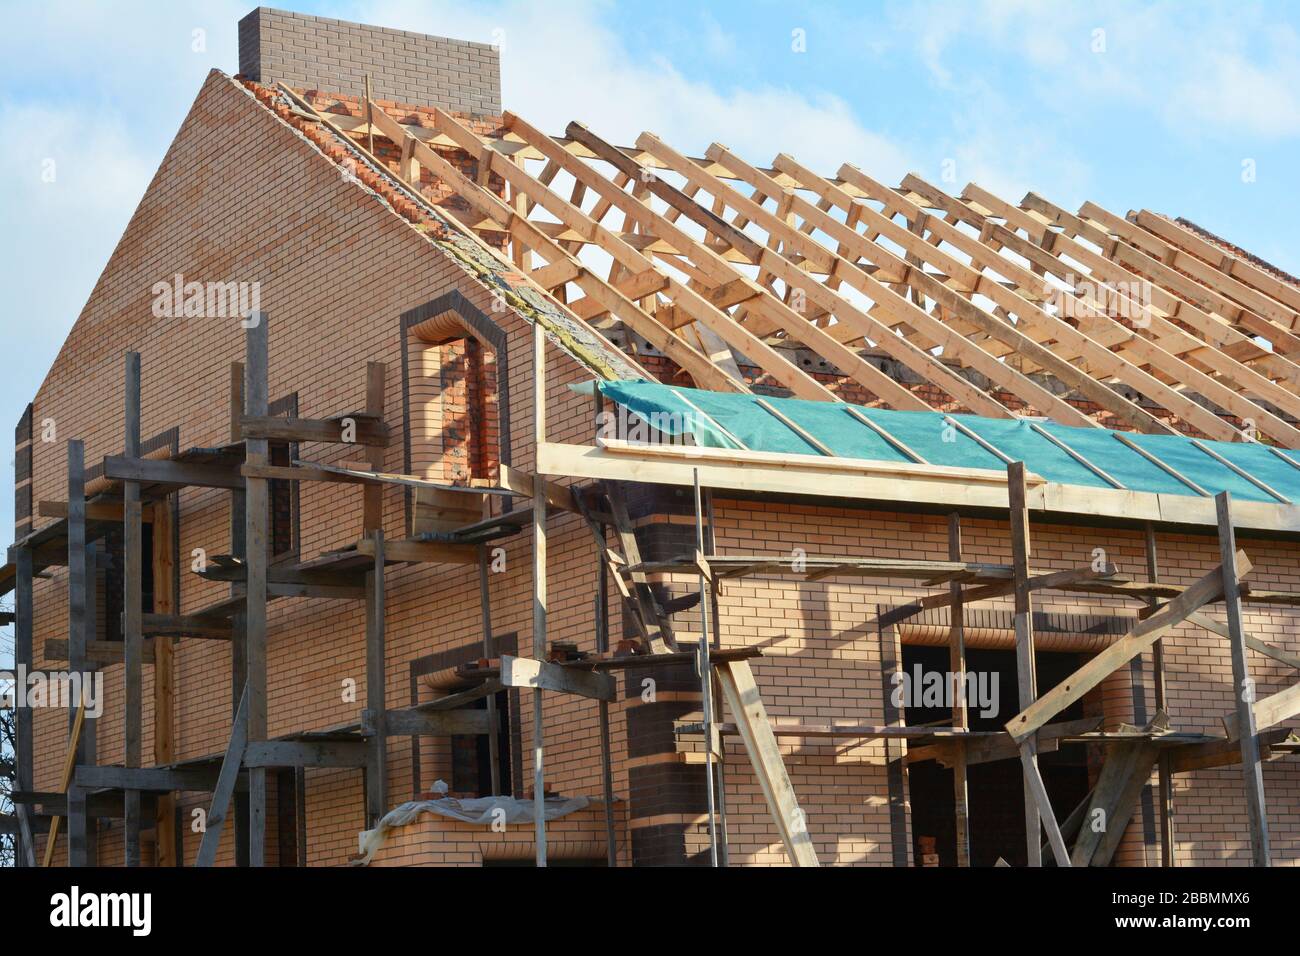 Costruzione di una struttura in legno sul tetto della casa. Costruzione di tetti incompleta casa tralicci tetto, barriera al vapore, travi in legno, eaves, legname Foto Stock